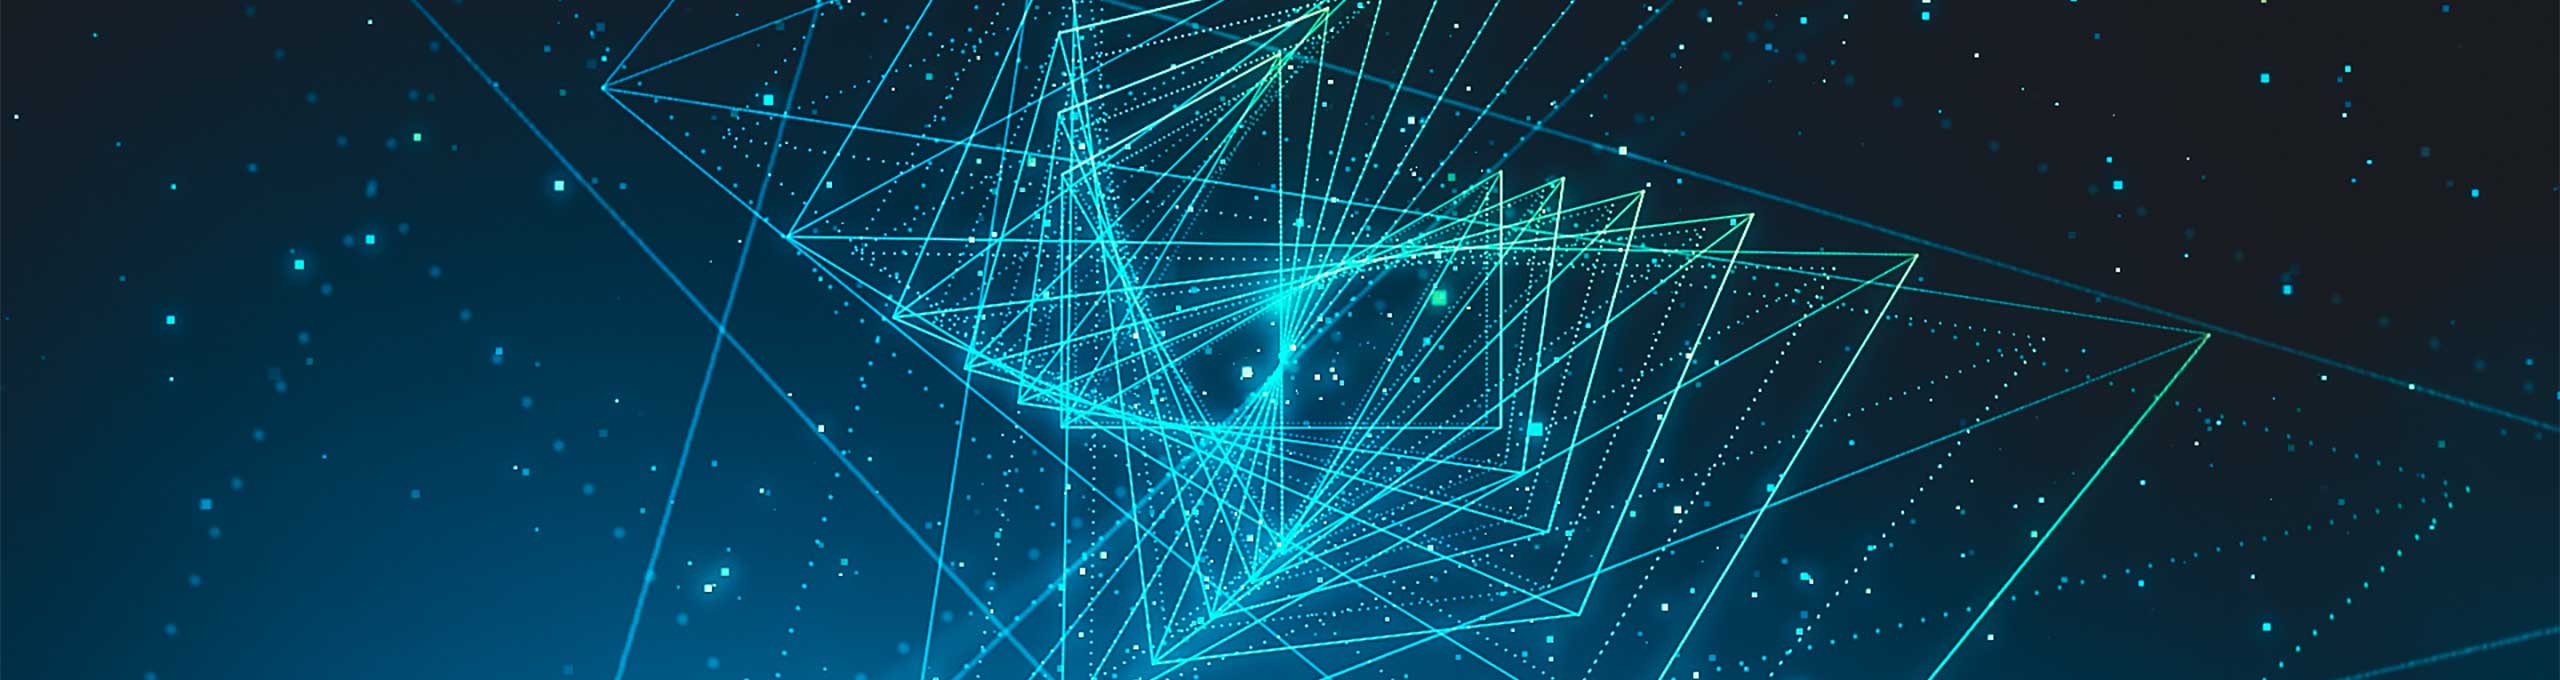 Image depicting connected, autonomous data points